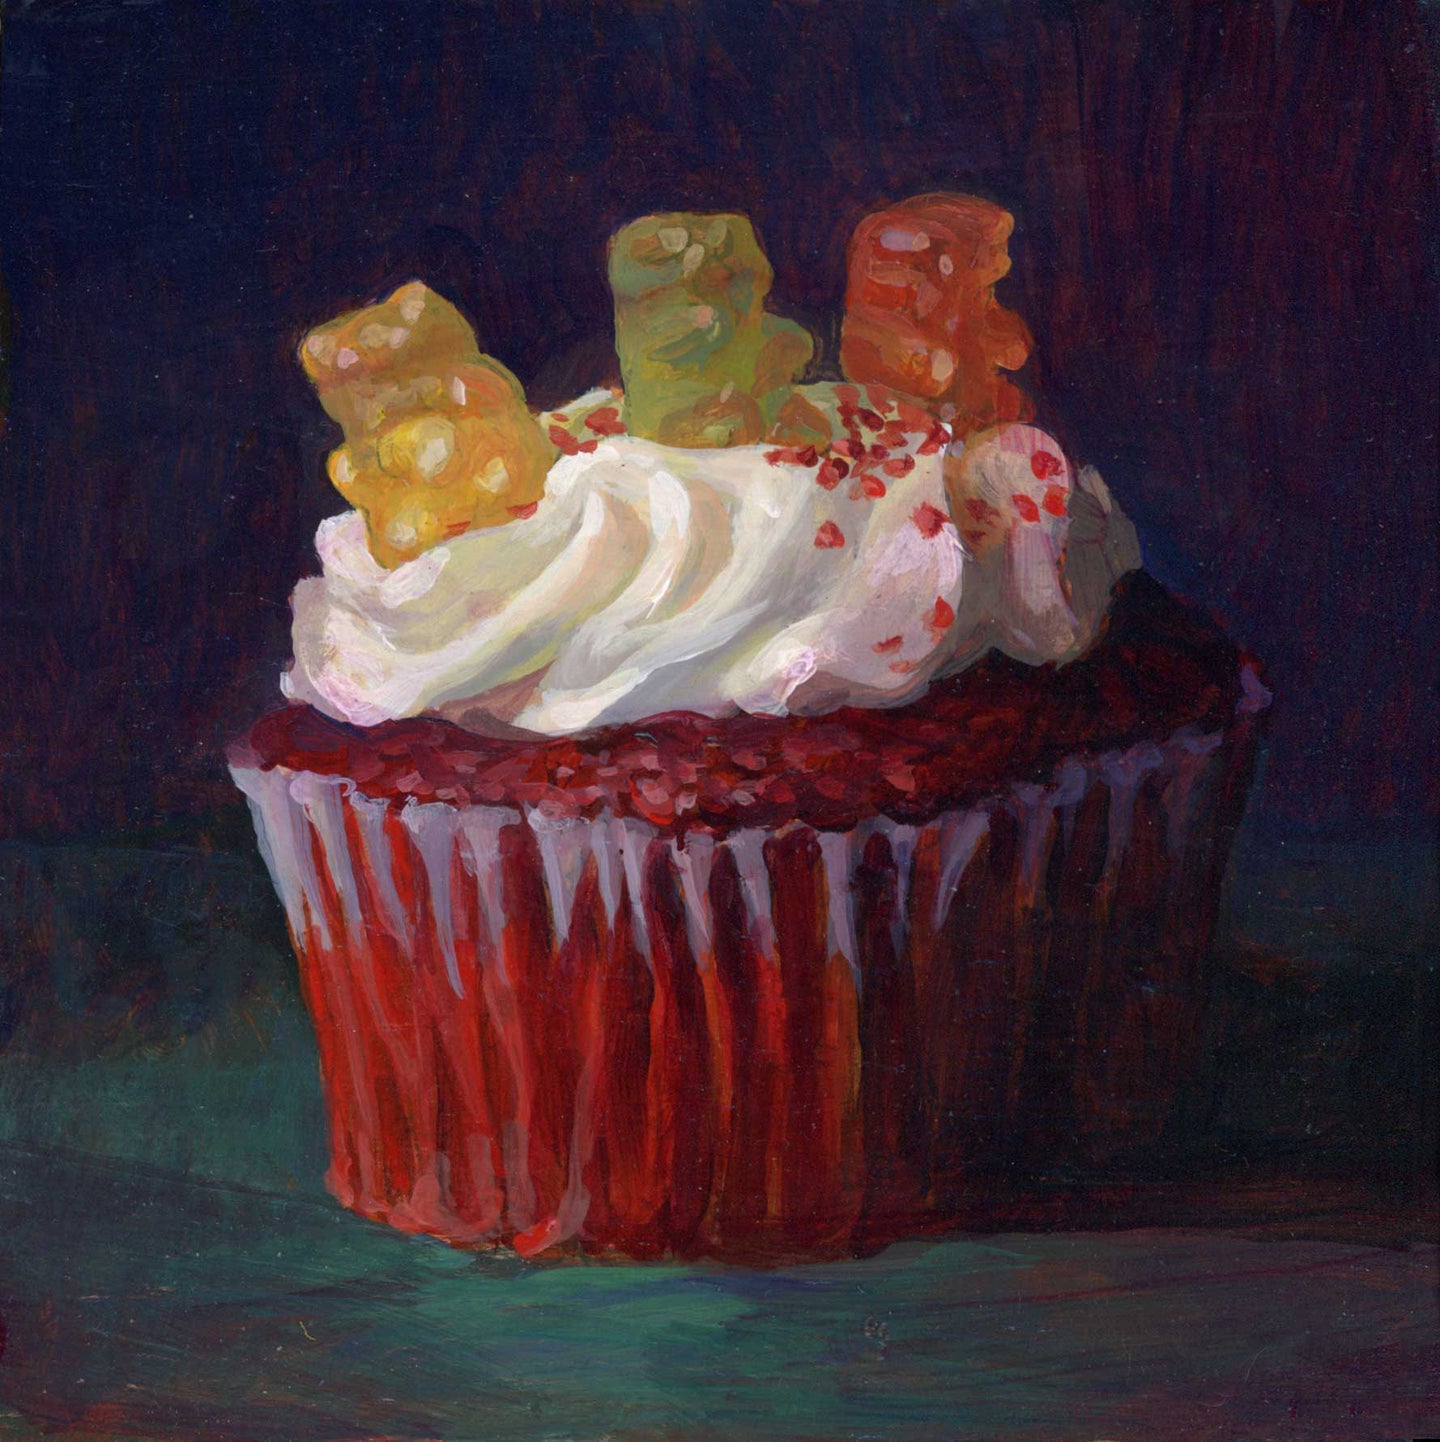 87. Gummy Bears on Red Velvet Cupcake